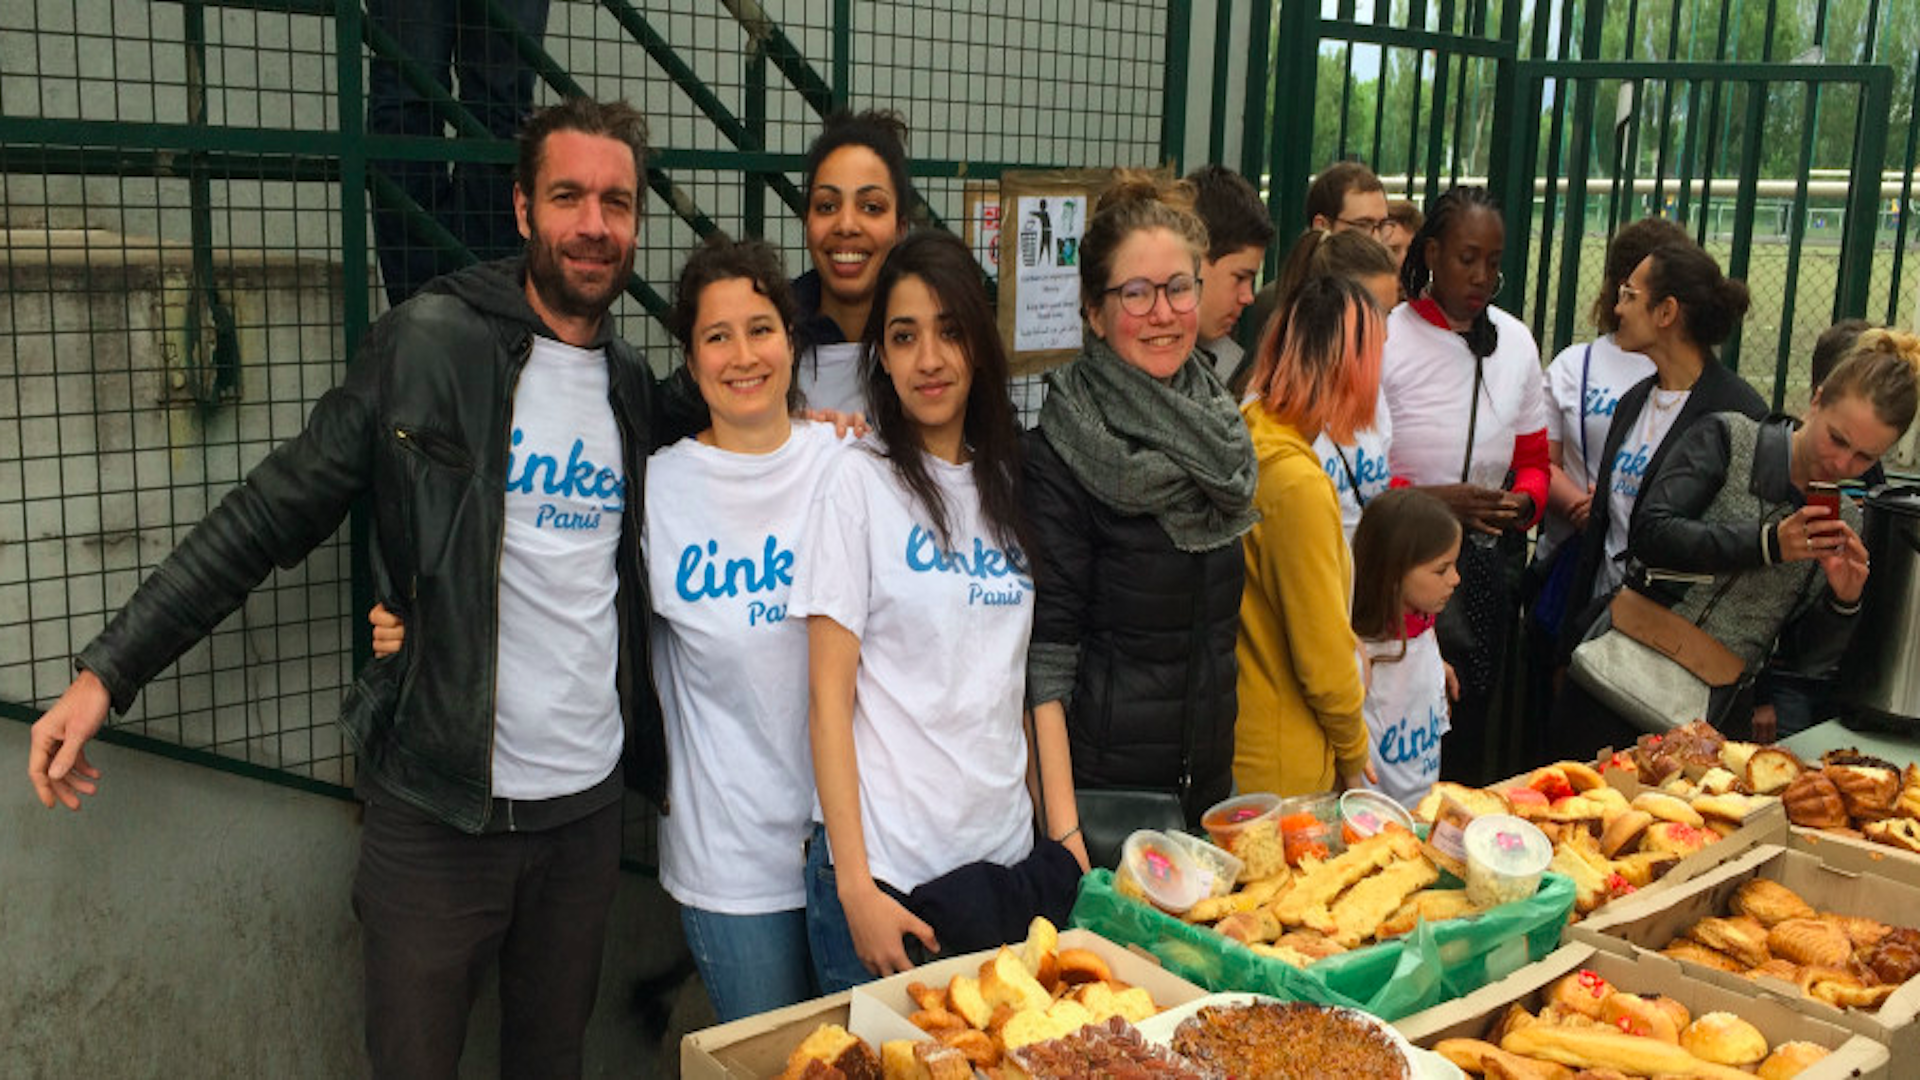 Linkee, volontari in bici per donare il cibo invenduto ai bisognosi - Riciblog